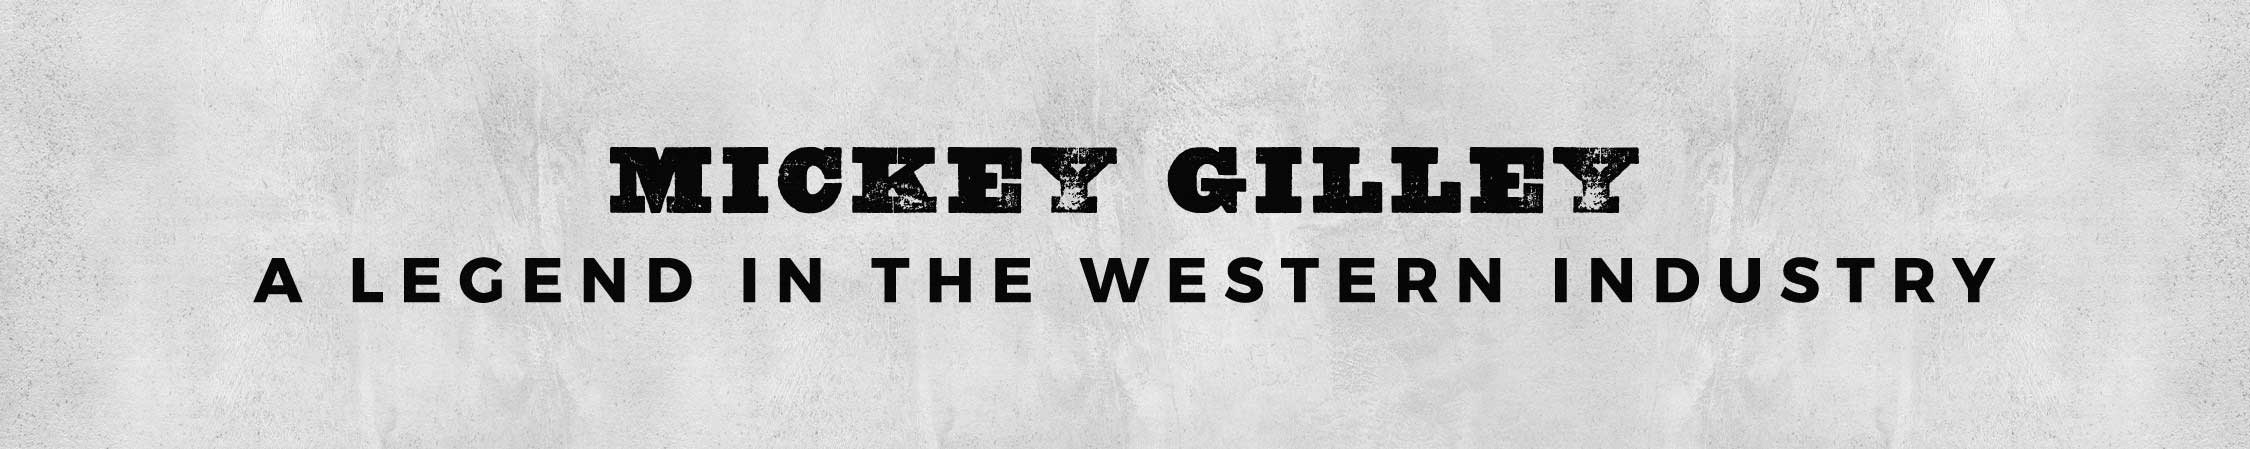 Mickey Gilley western legend header